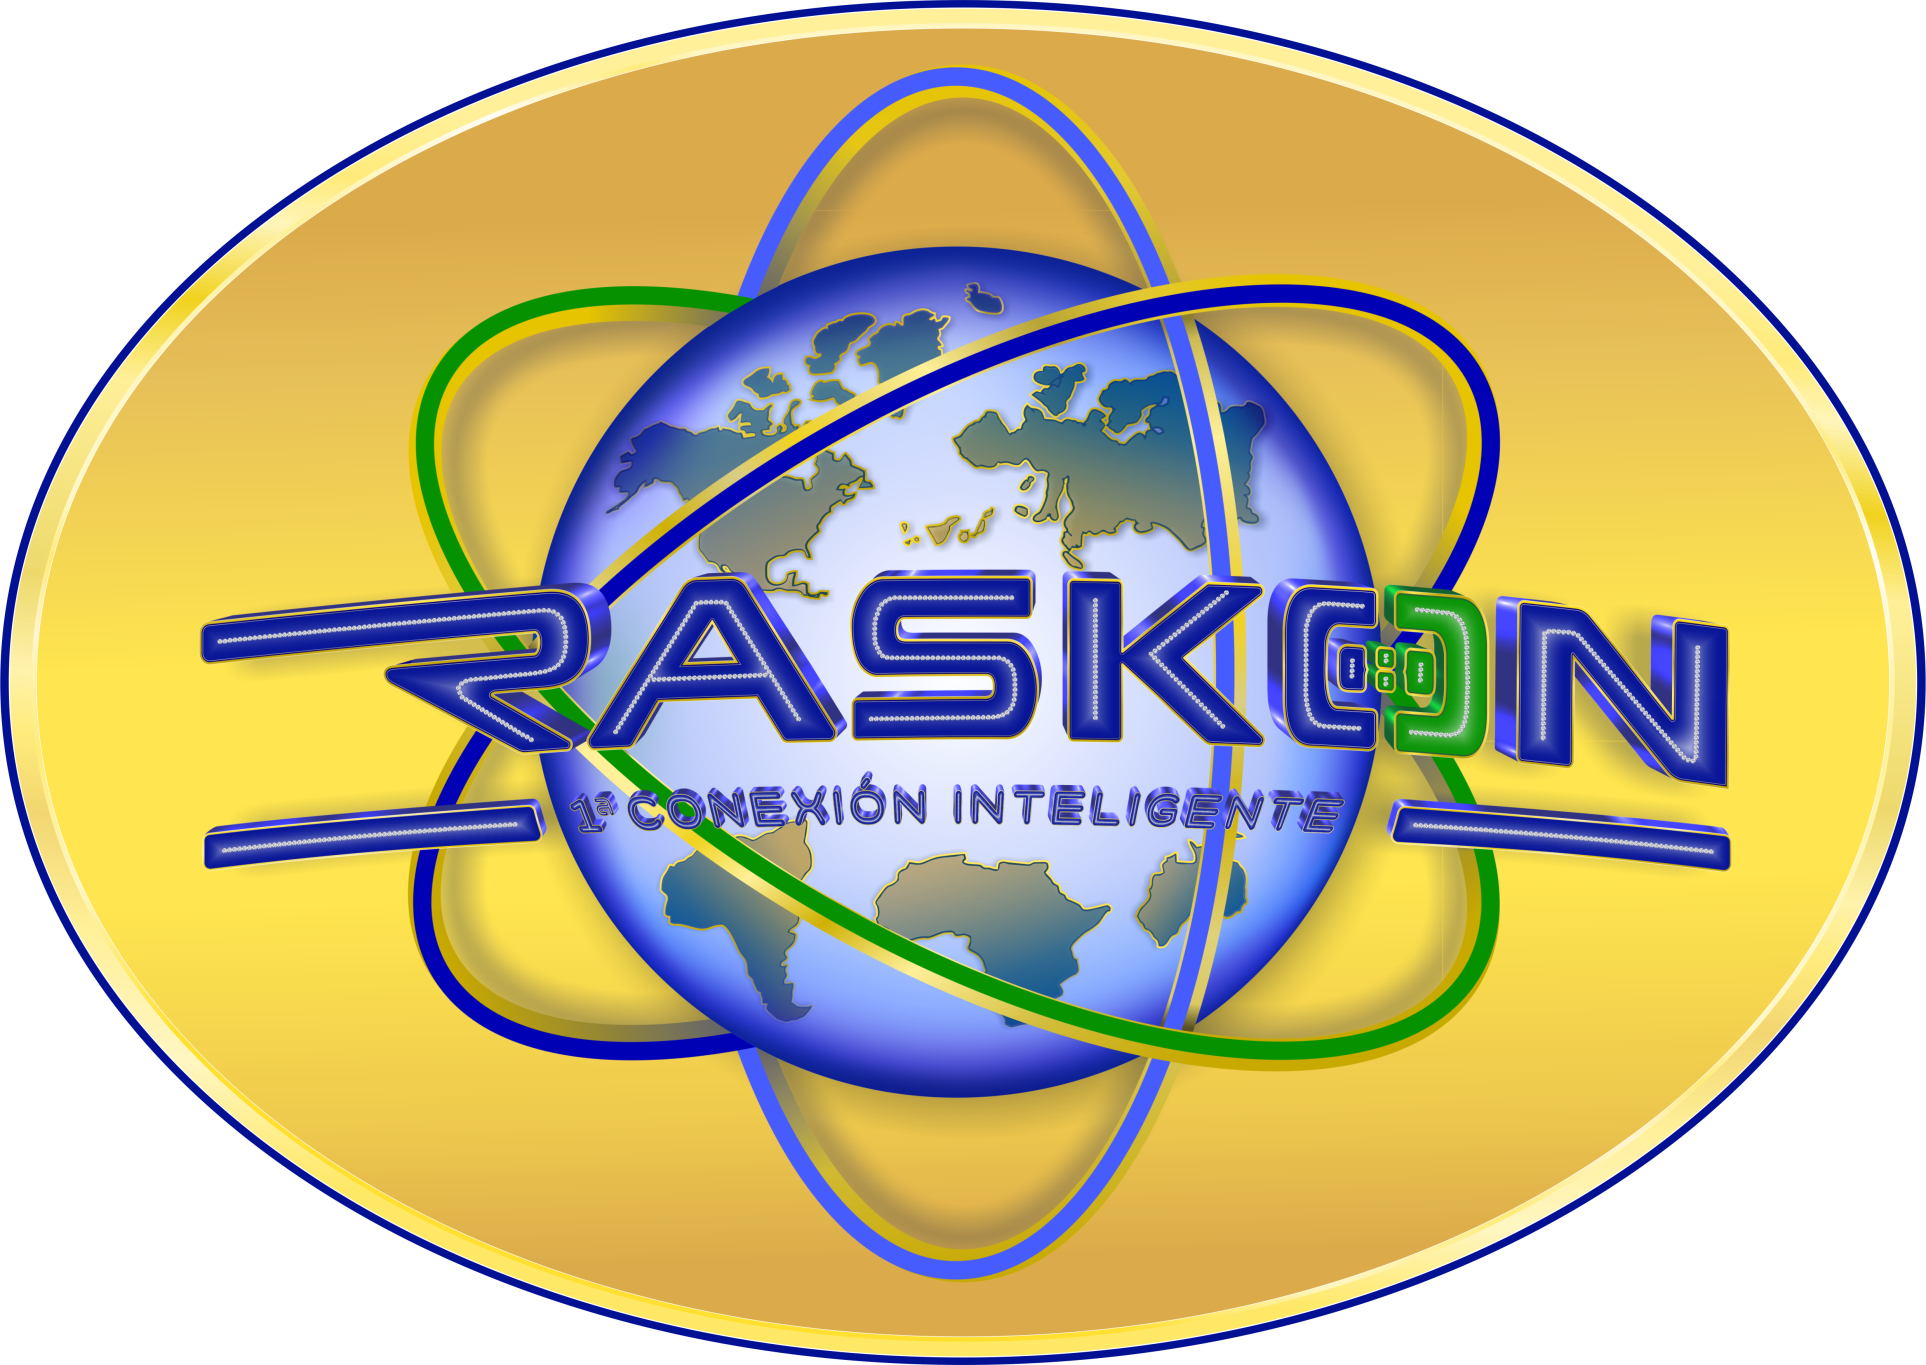 Raskon Medianet International